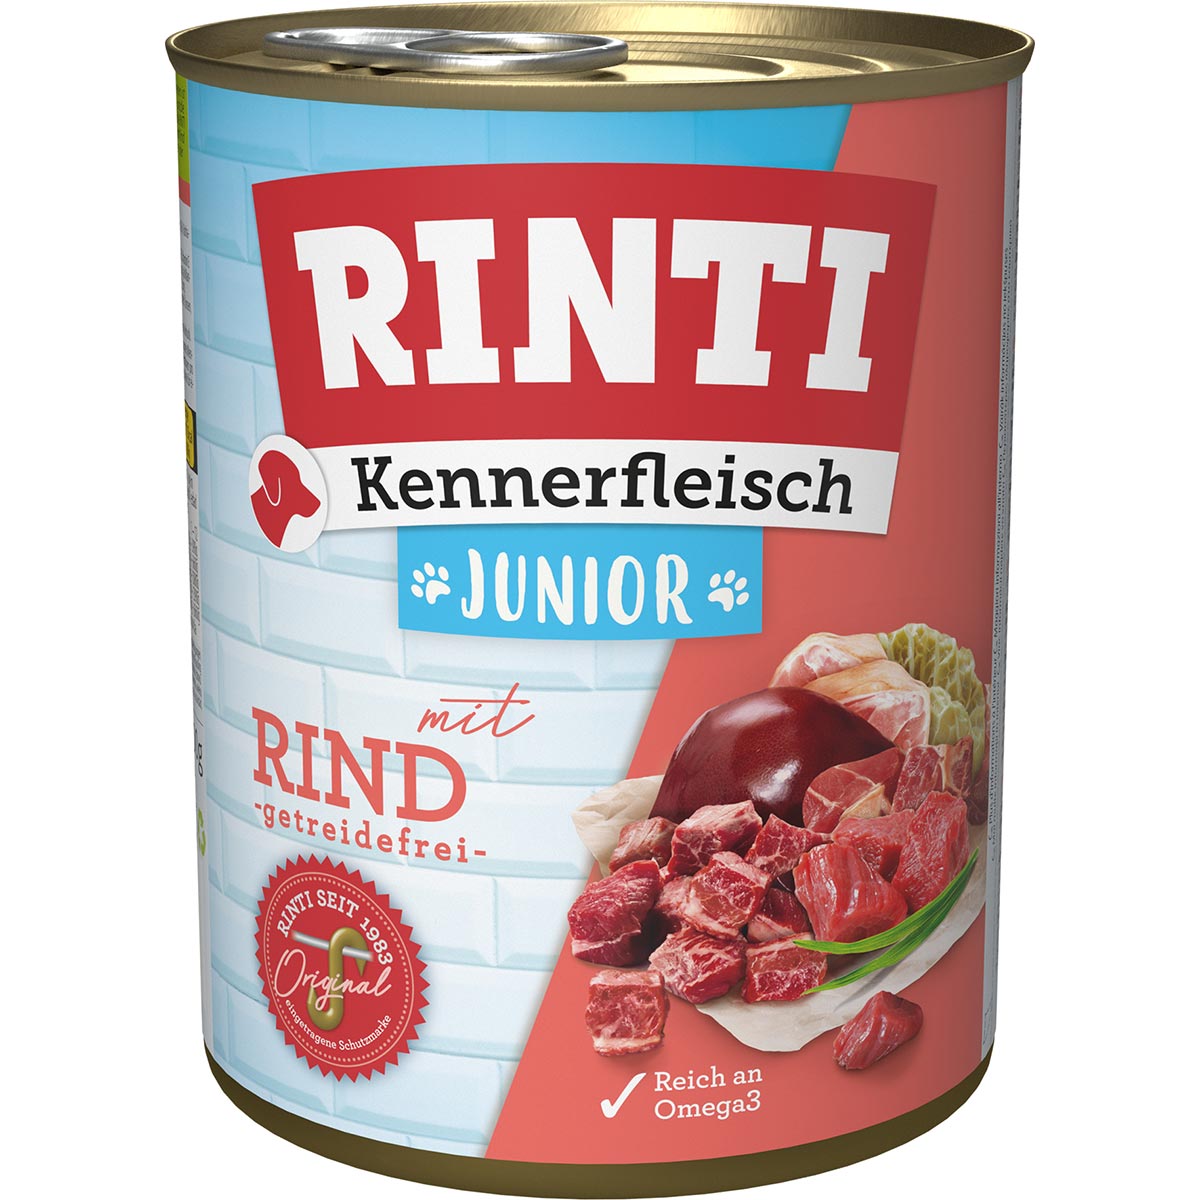 Rinti Kennerfleisch Junior mit Rind 12x800g von Rinti